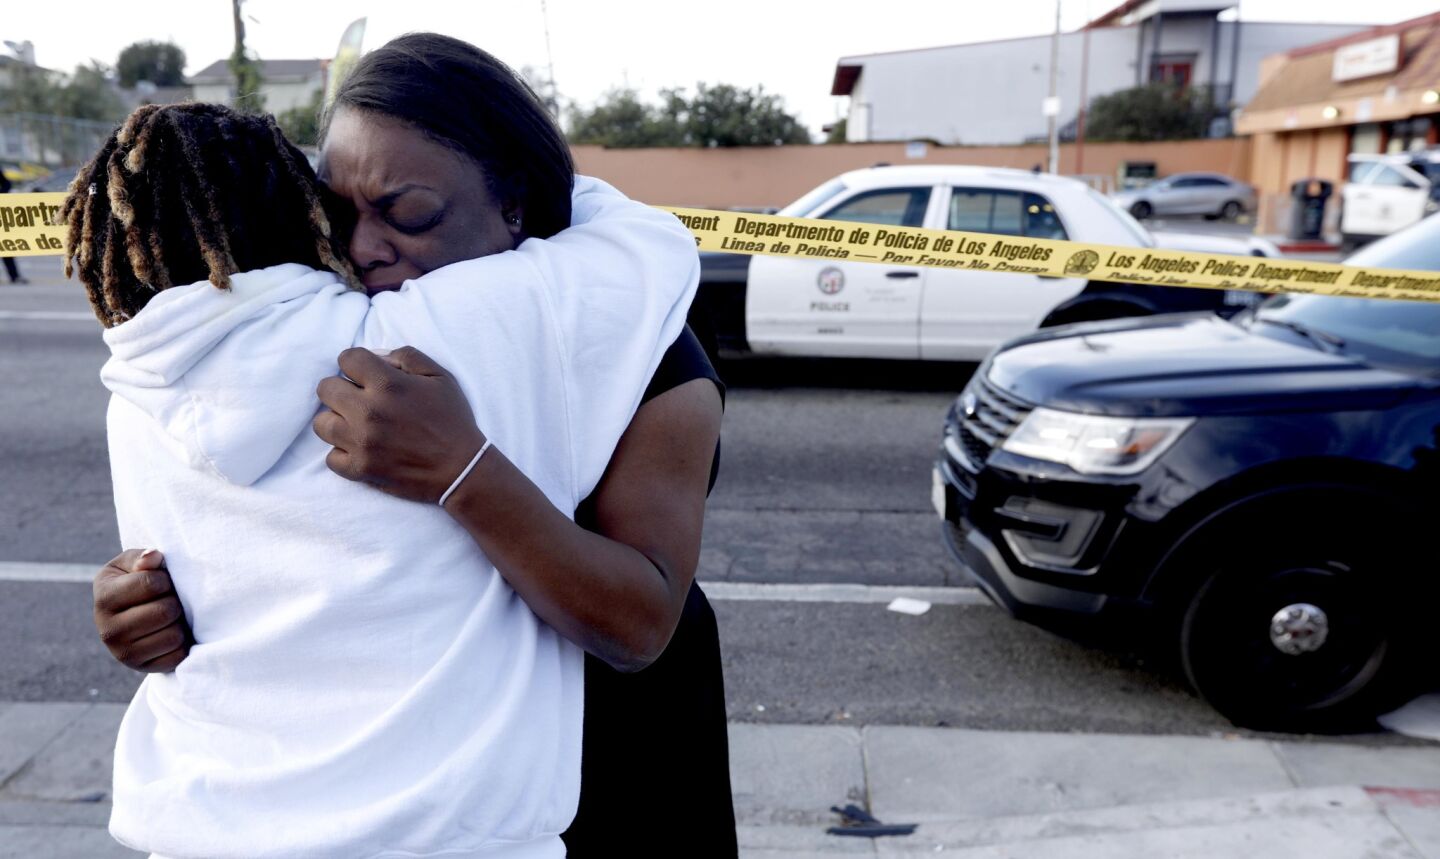 Rapper Nipsey Hussle killed in shooting